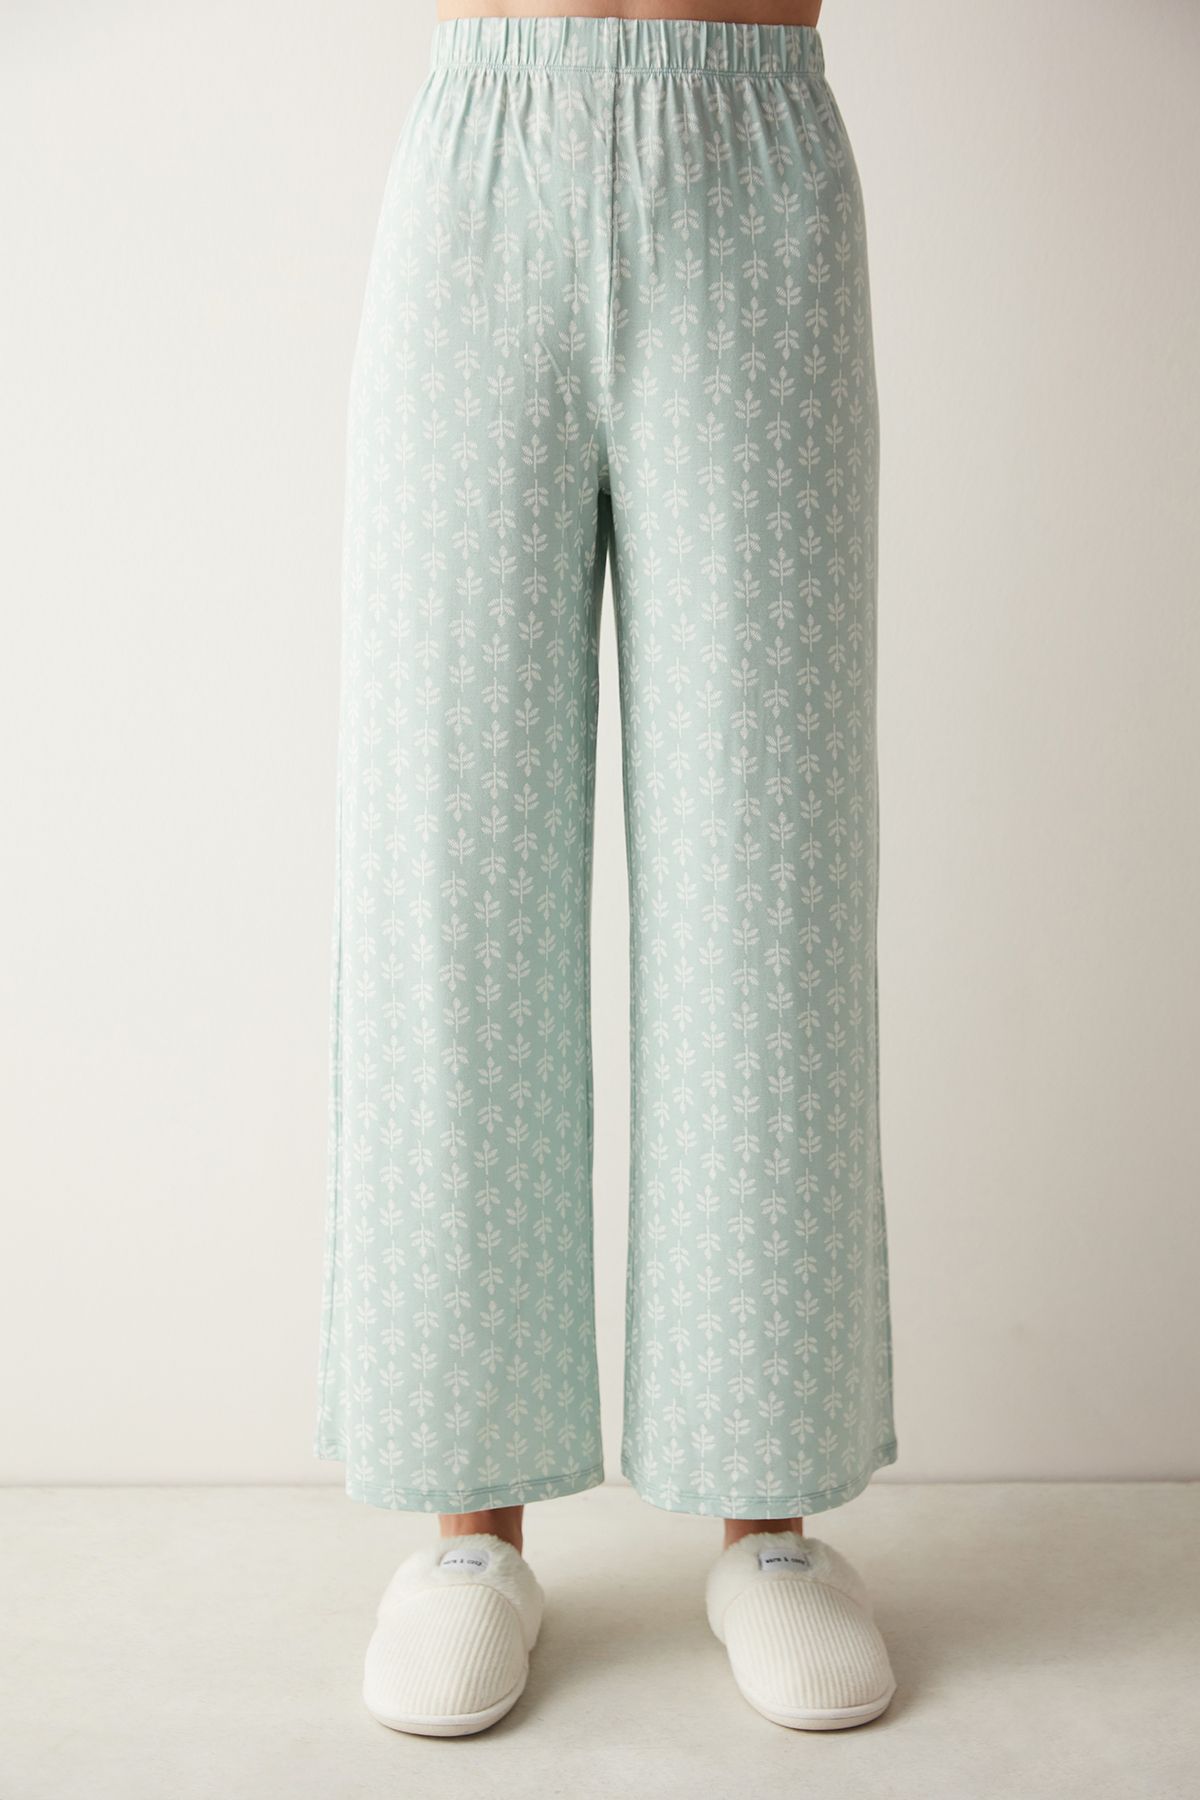 Penti Joise Yeşil Desenli Pantolon Mint Yeşili Pijama Altı